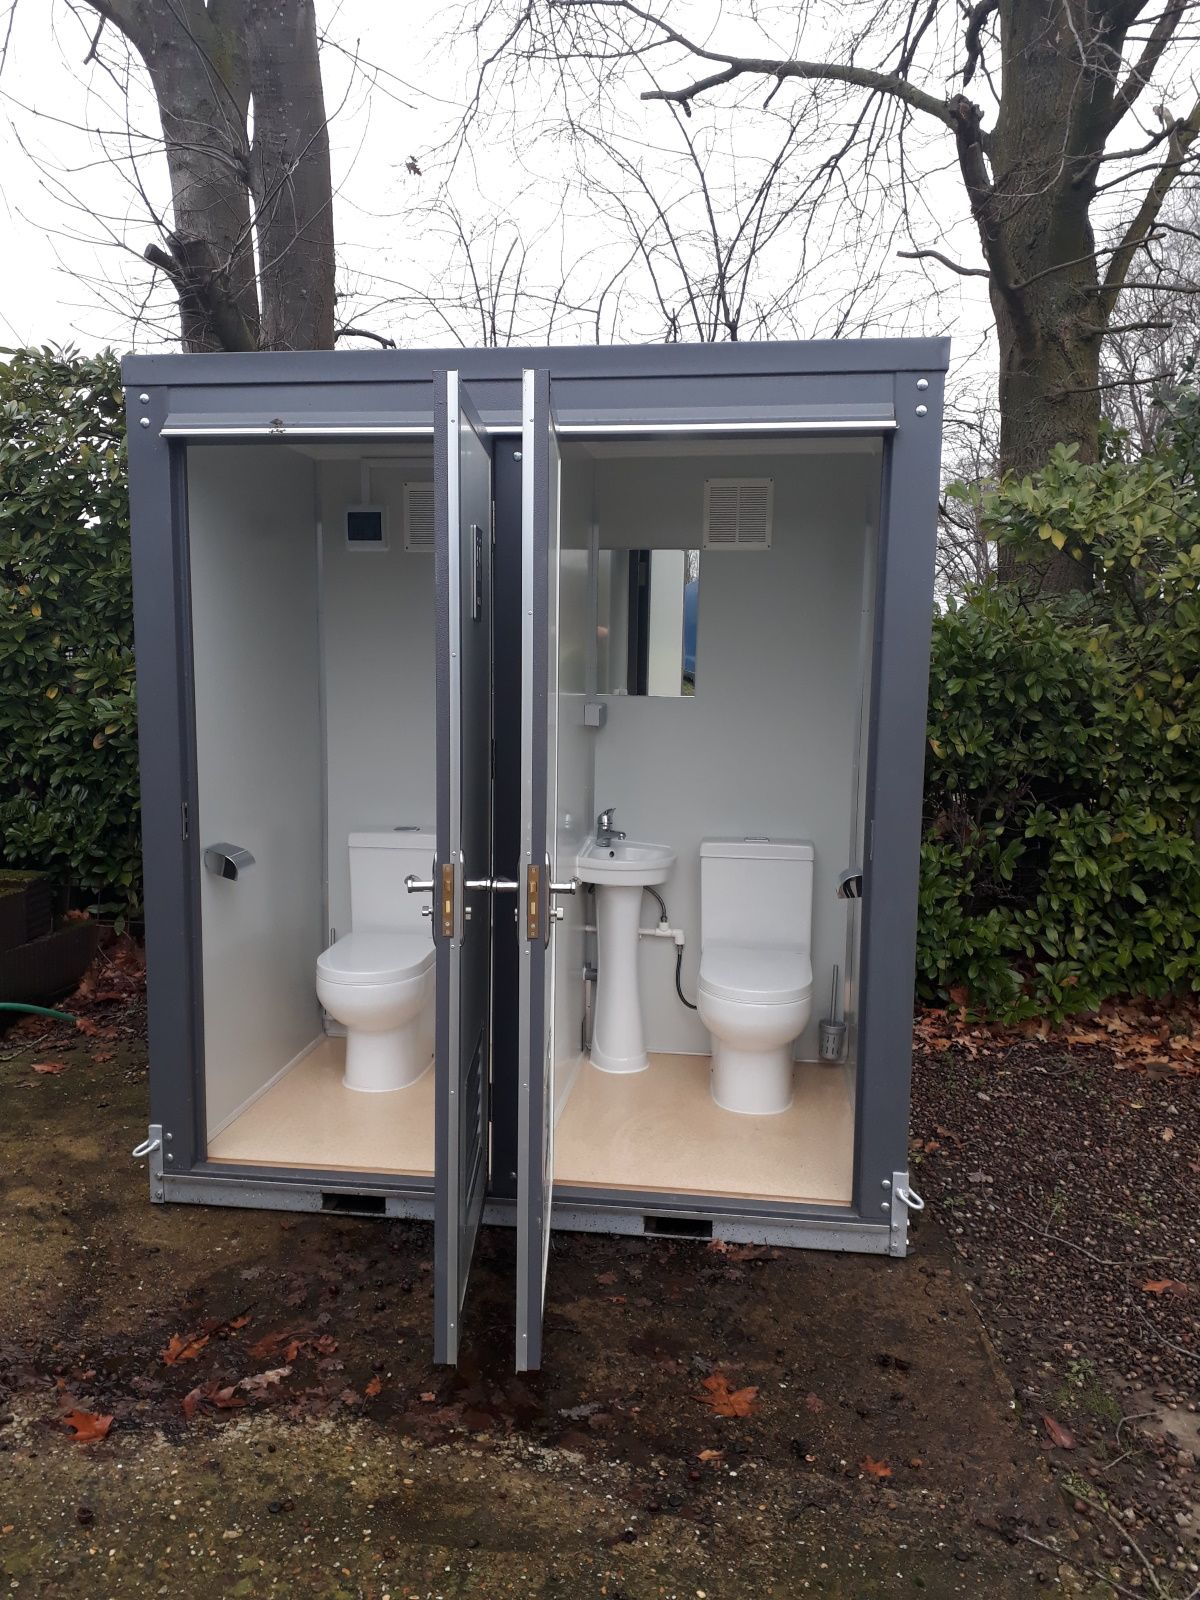 location toilette mobile petit facil a placer